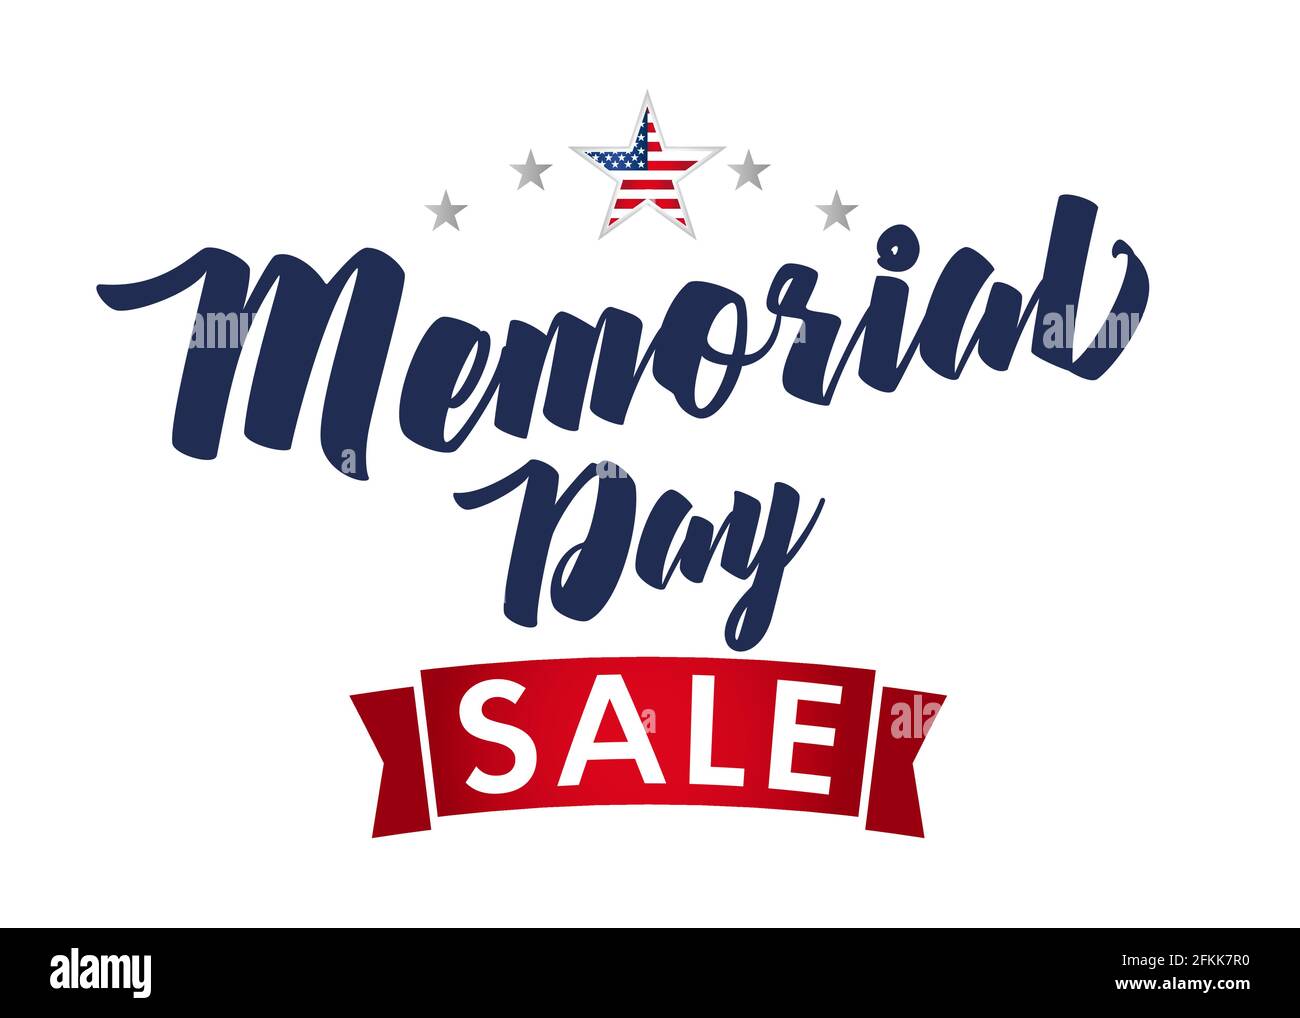 Webbanner Memorial Day Verkauf mit Sternen. Remember and Honor, Feiertagsdesign für amerikanische Feiertage mit Text und Flagge im Stern. Sonderangebot Stock Vektor